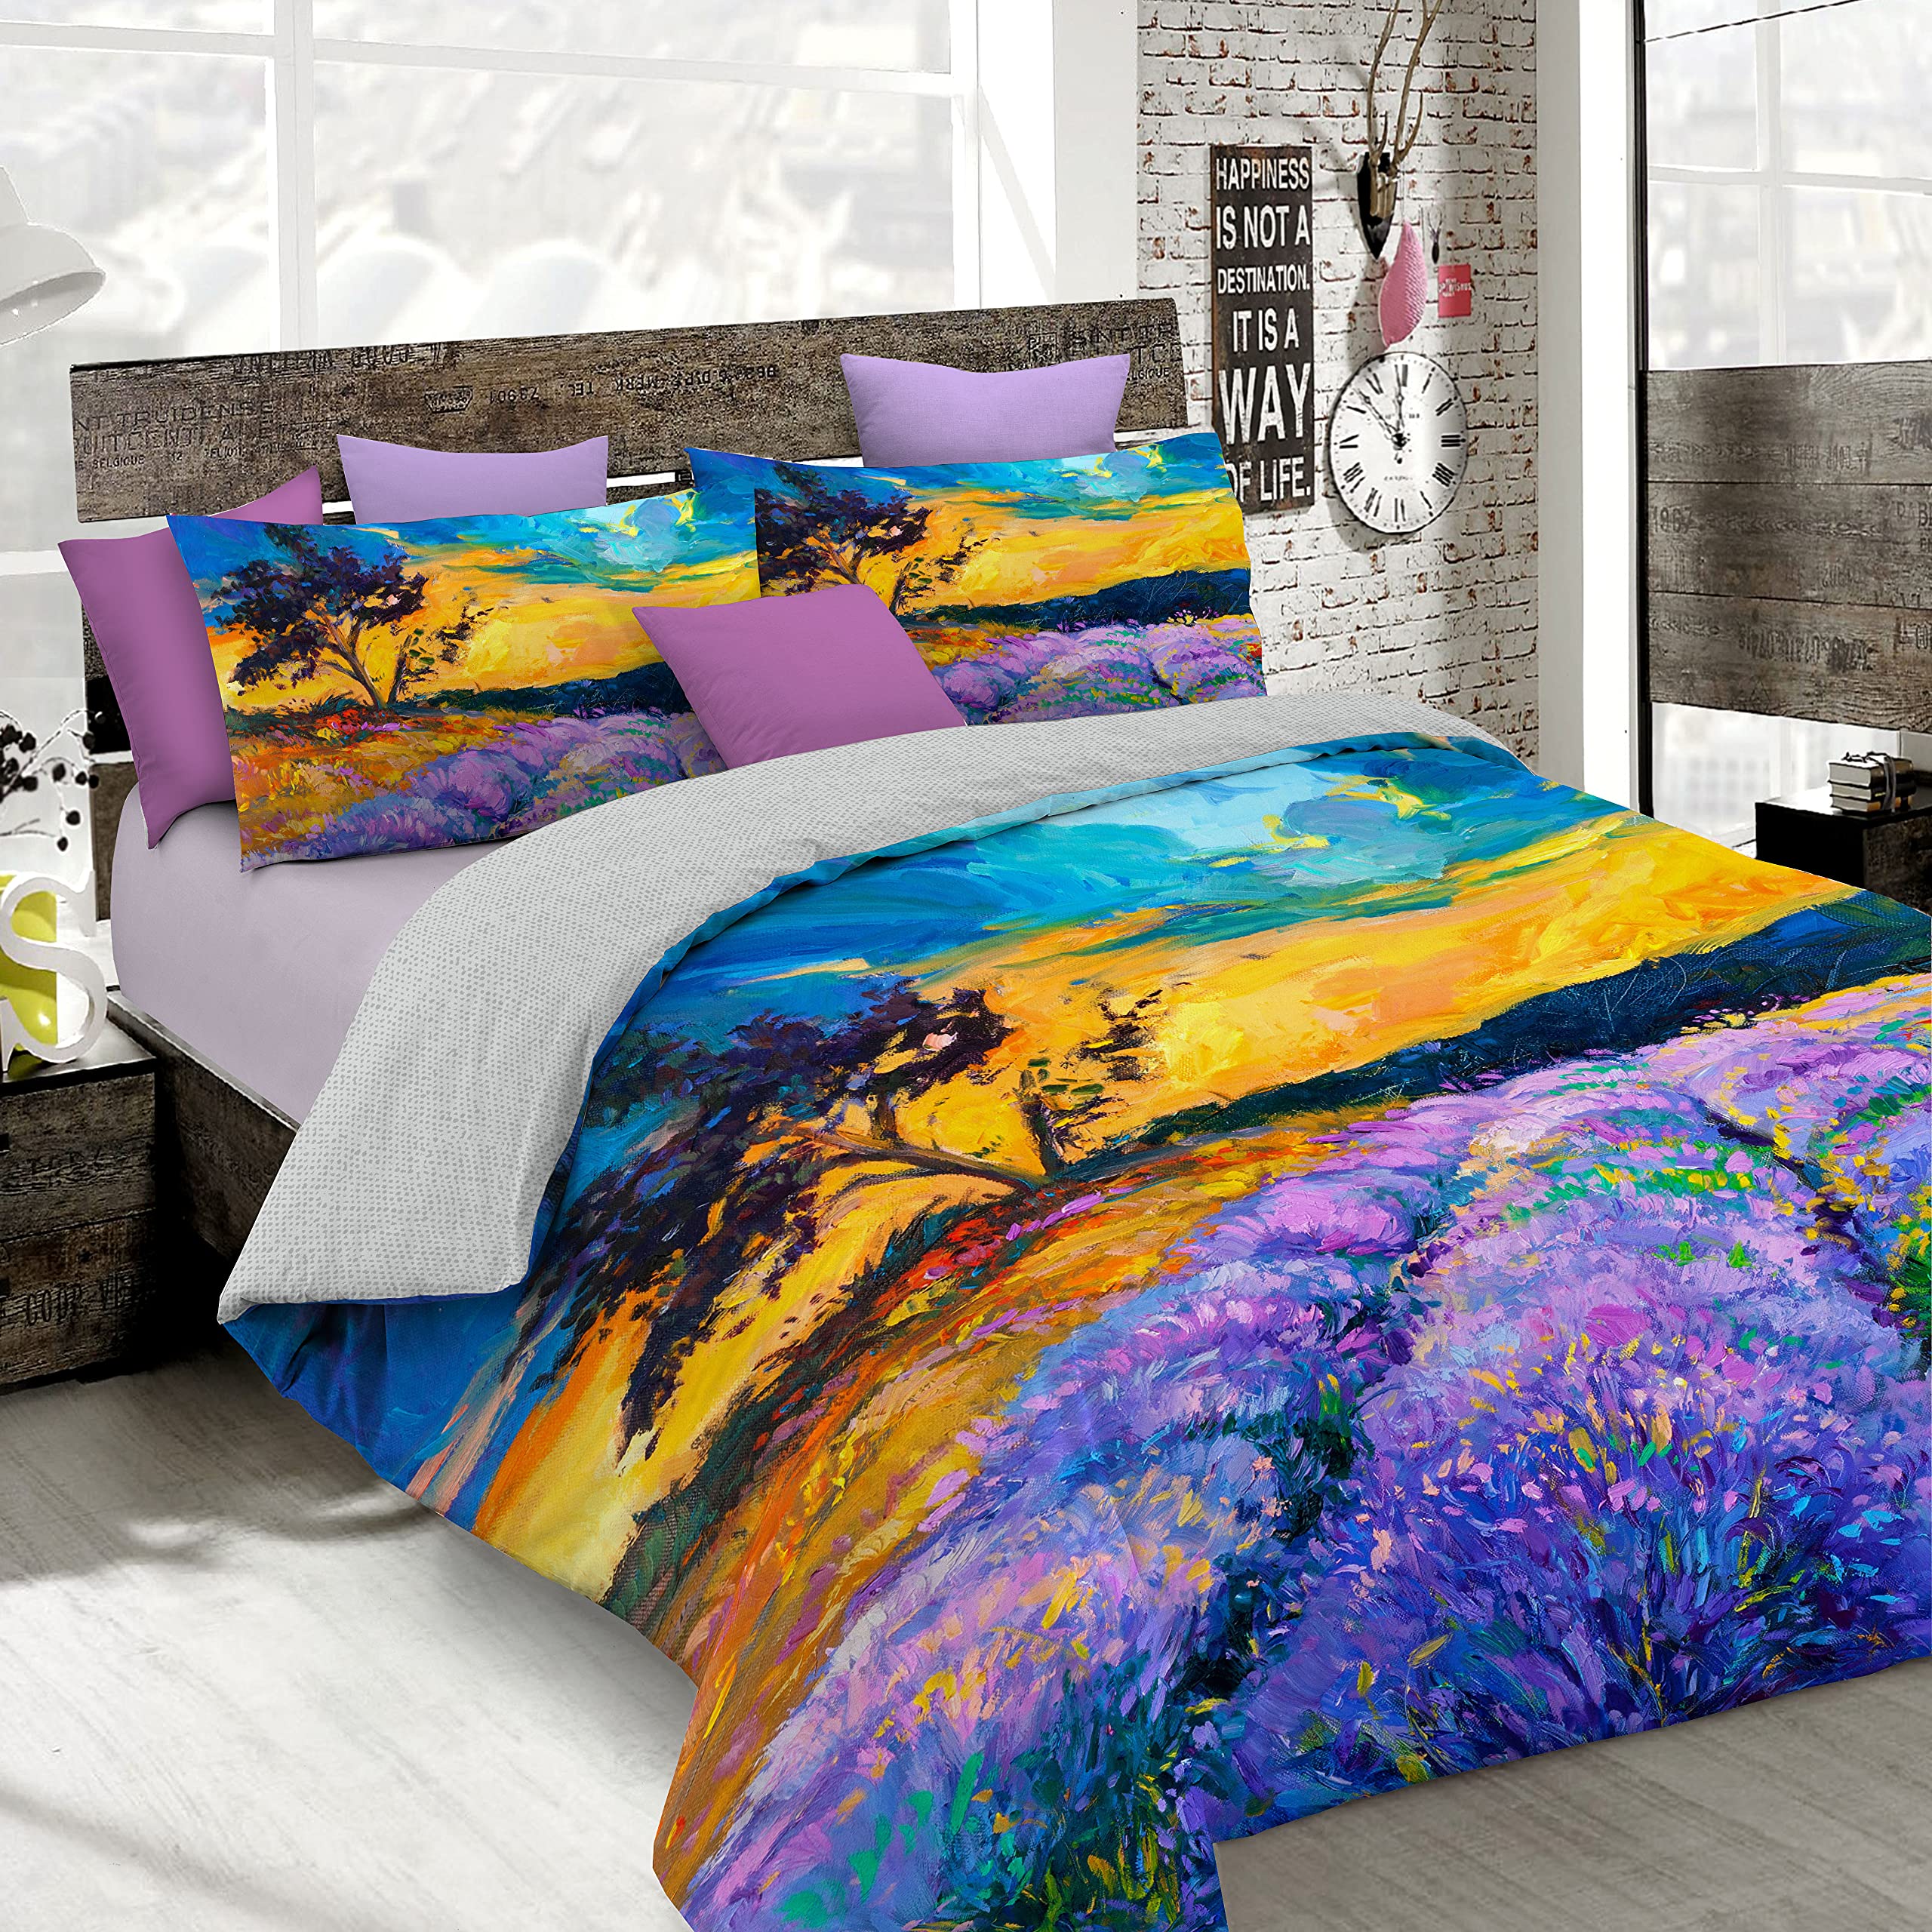 Italian Bed Linen Bettbezug, Doppelte, 100% Baumwolle, Multicolor SD12, DOPPEL